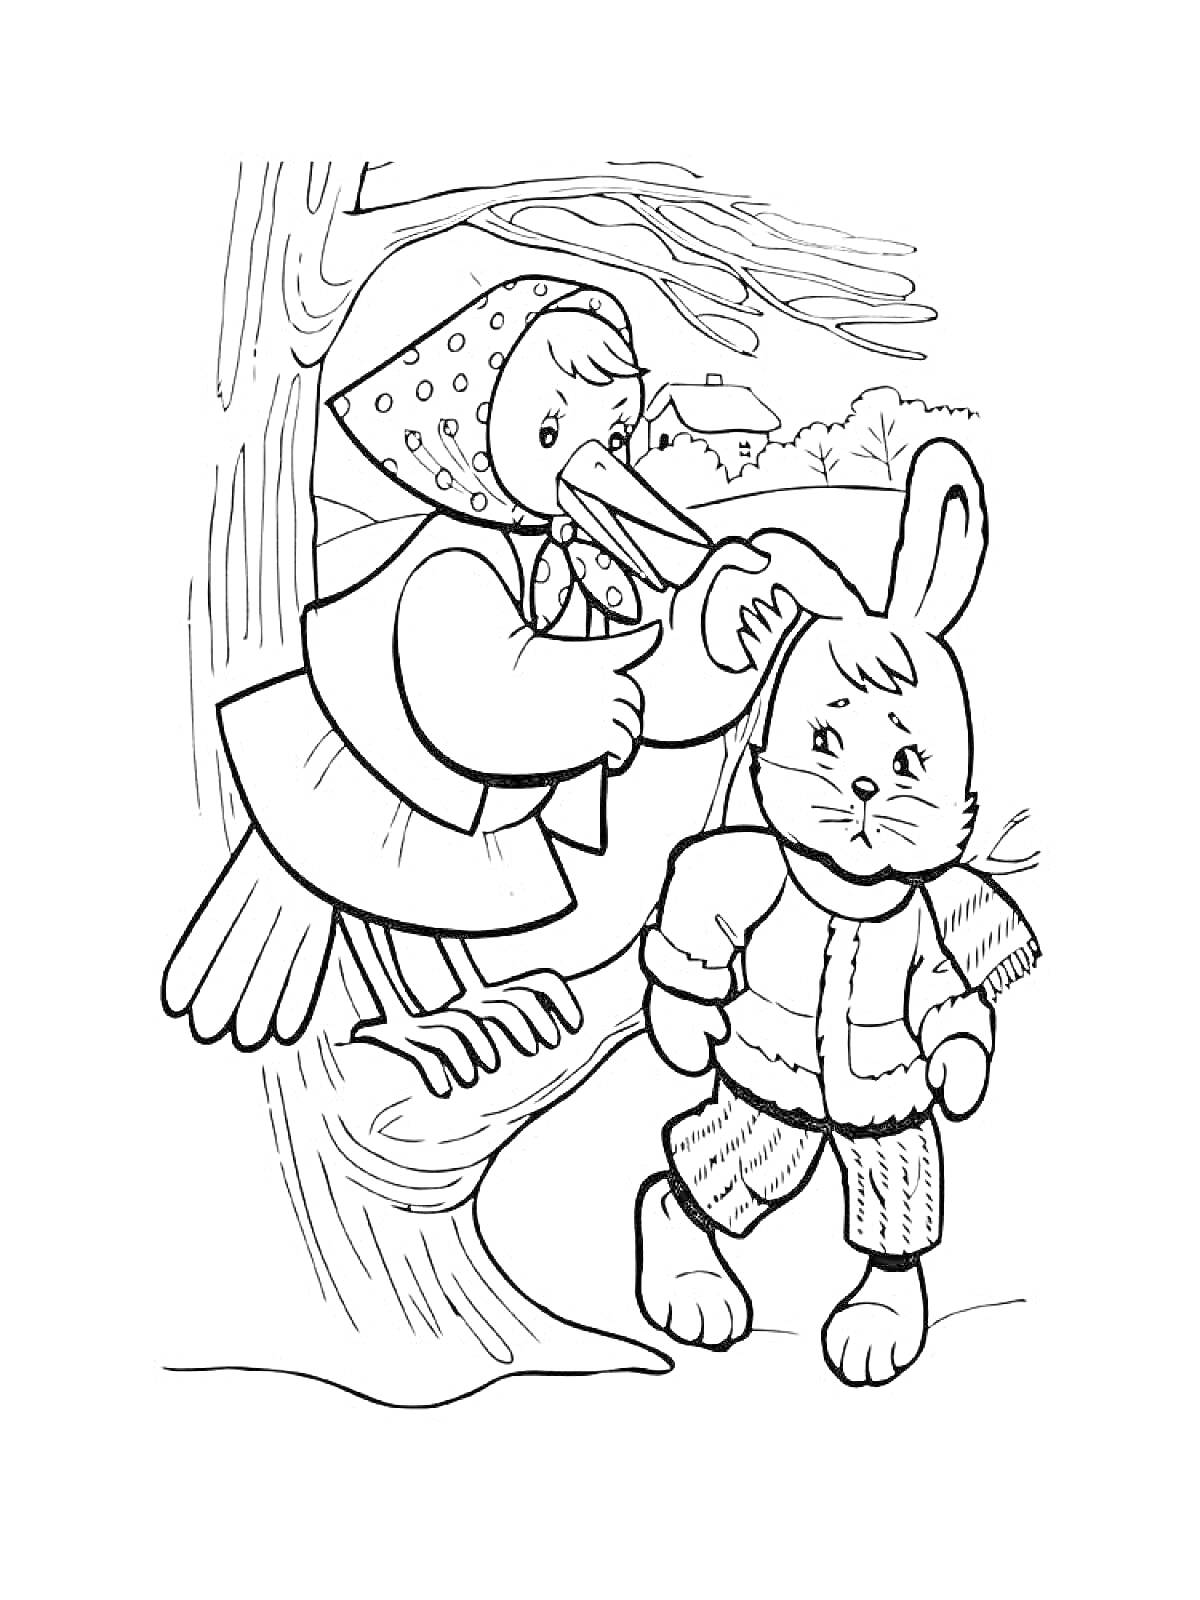 Раскраска Аист в платке и плаще вместе с кроликом в куртке среди деревьев